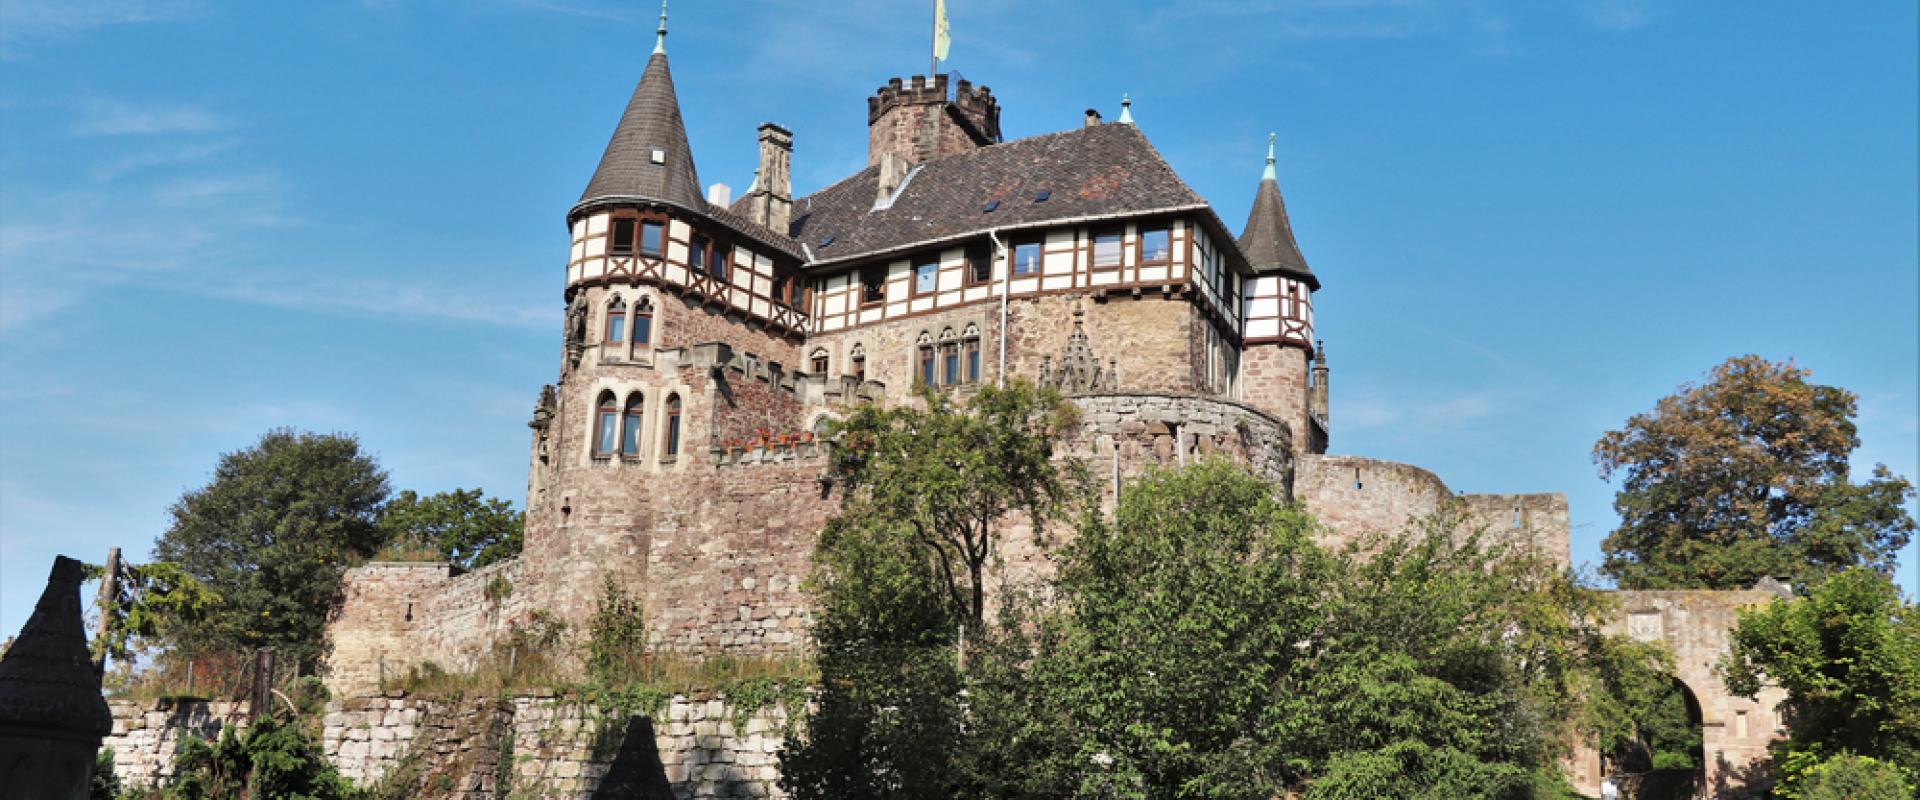 Schloss Berlepsch 